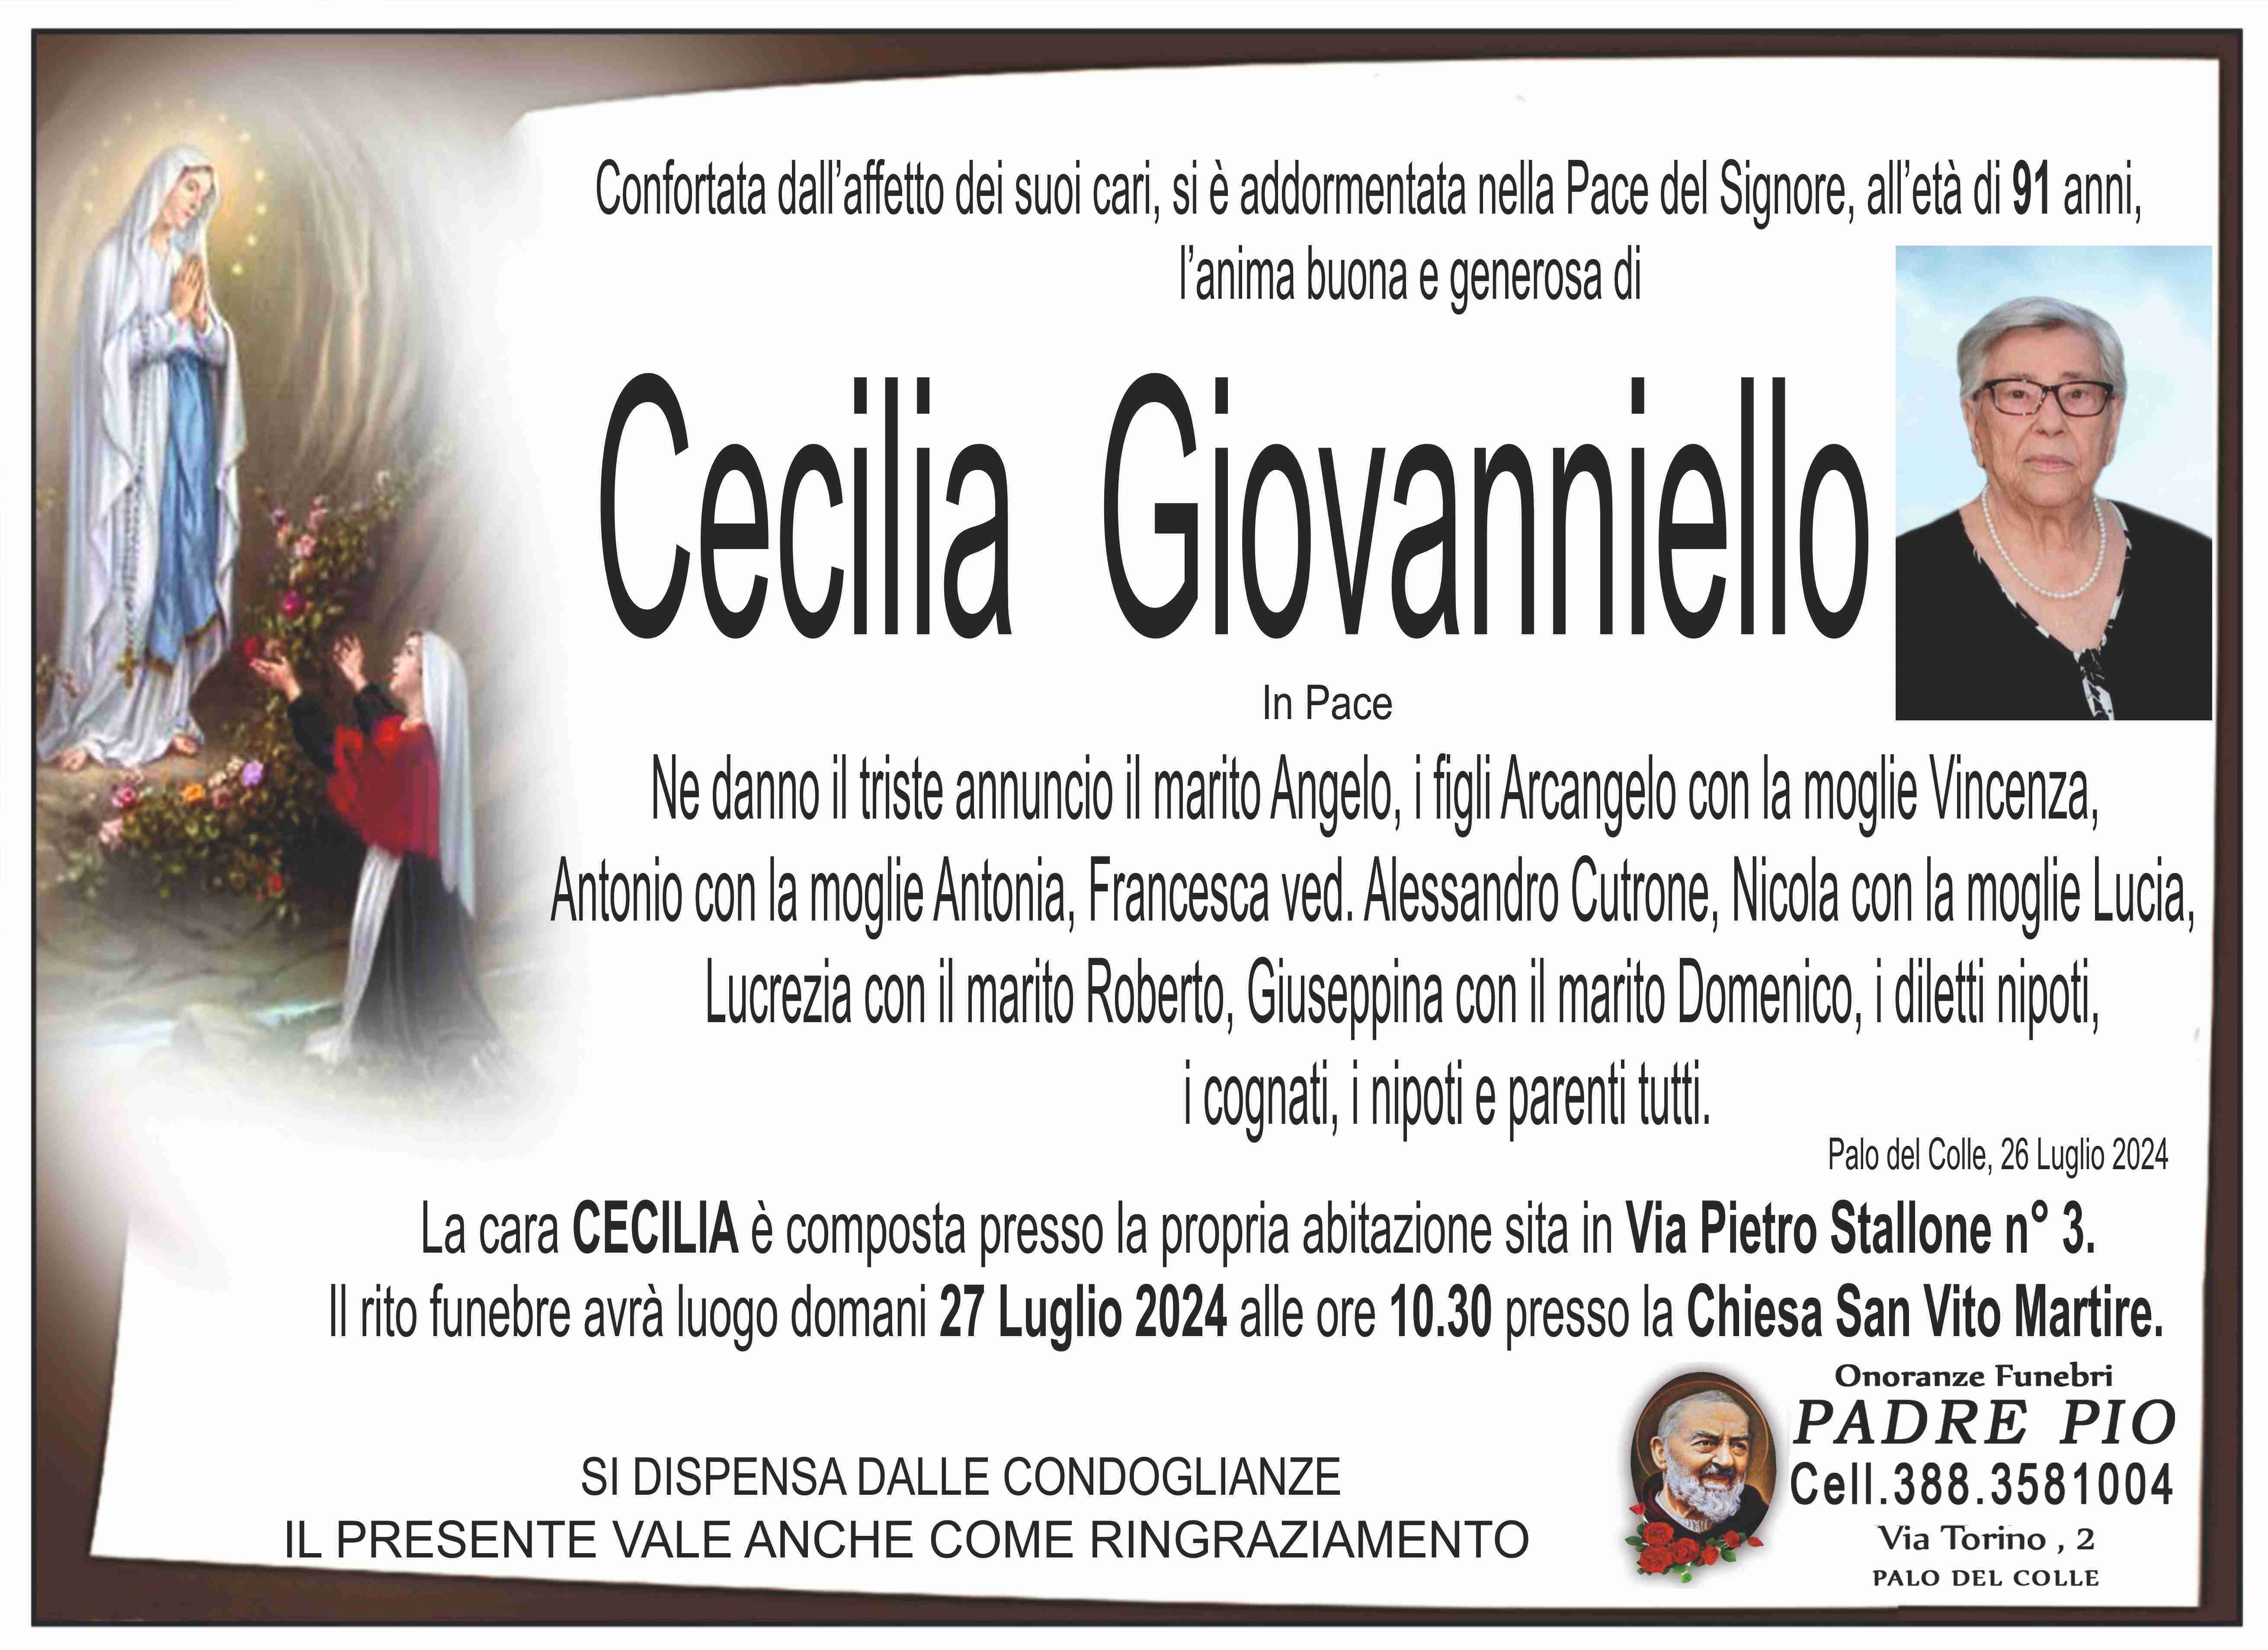 Cecilia Giovanniello